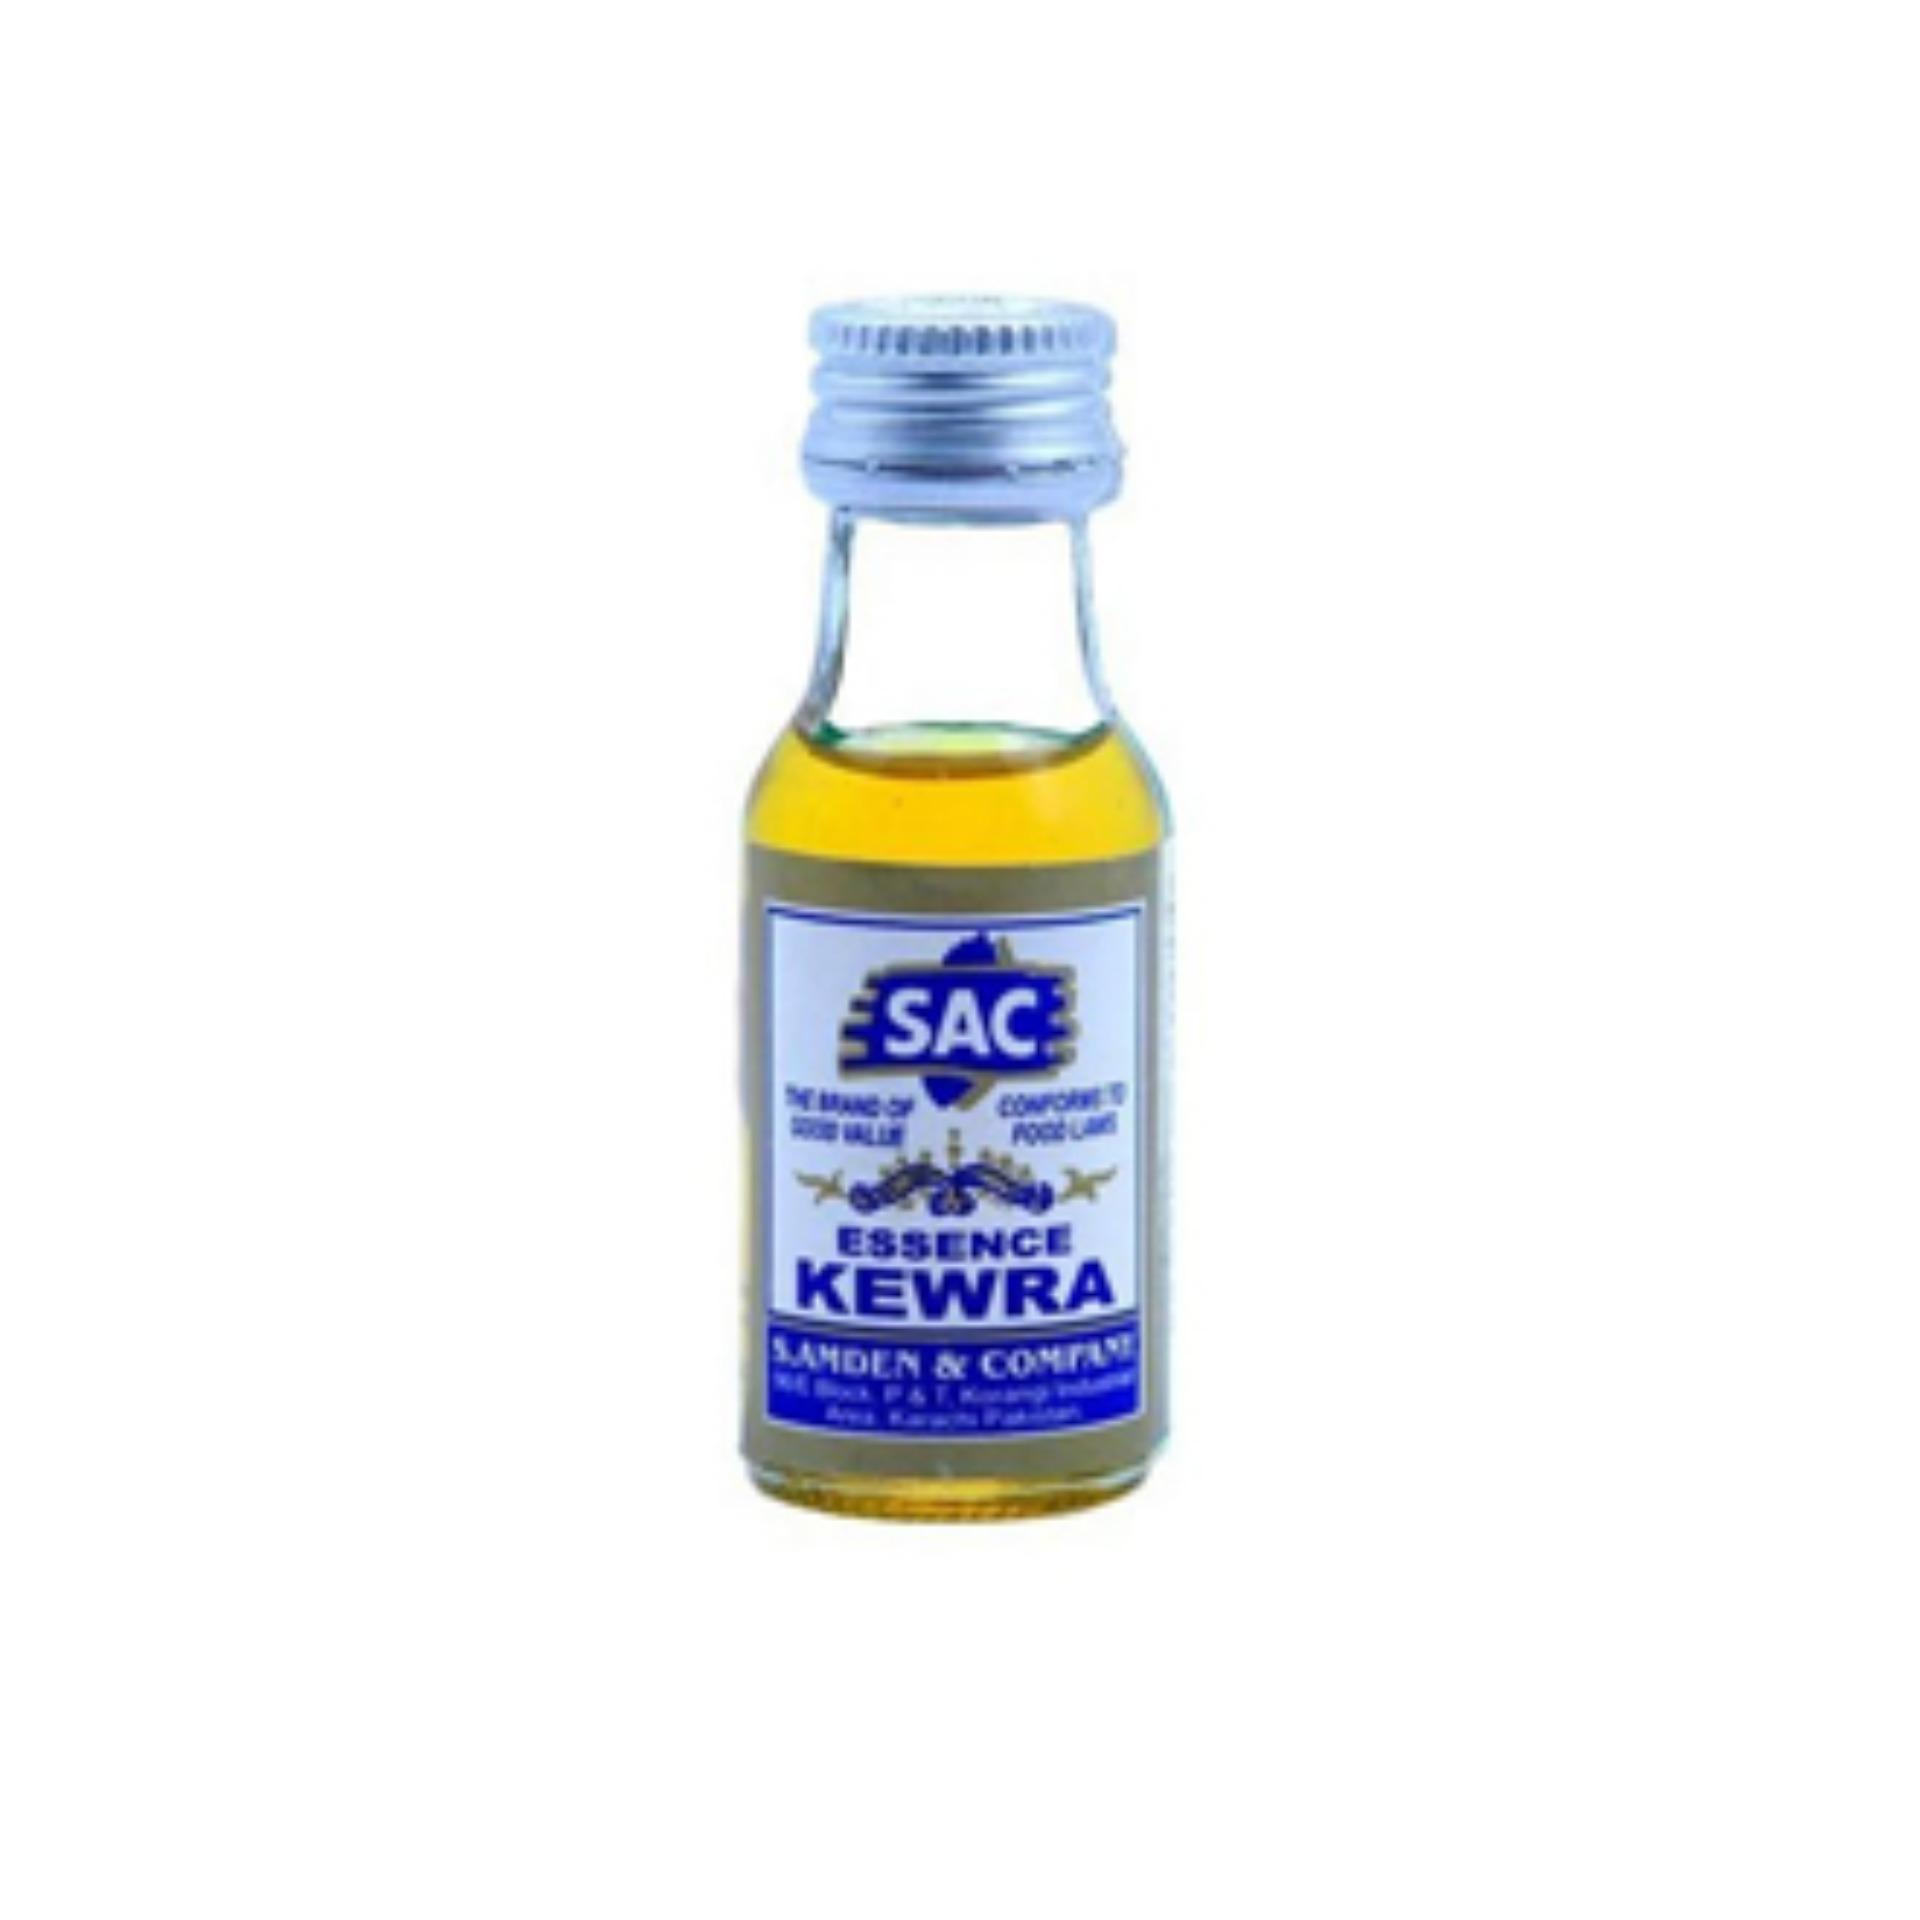 Kewra Essence (AGC)